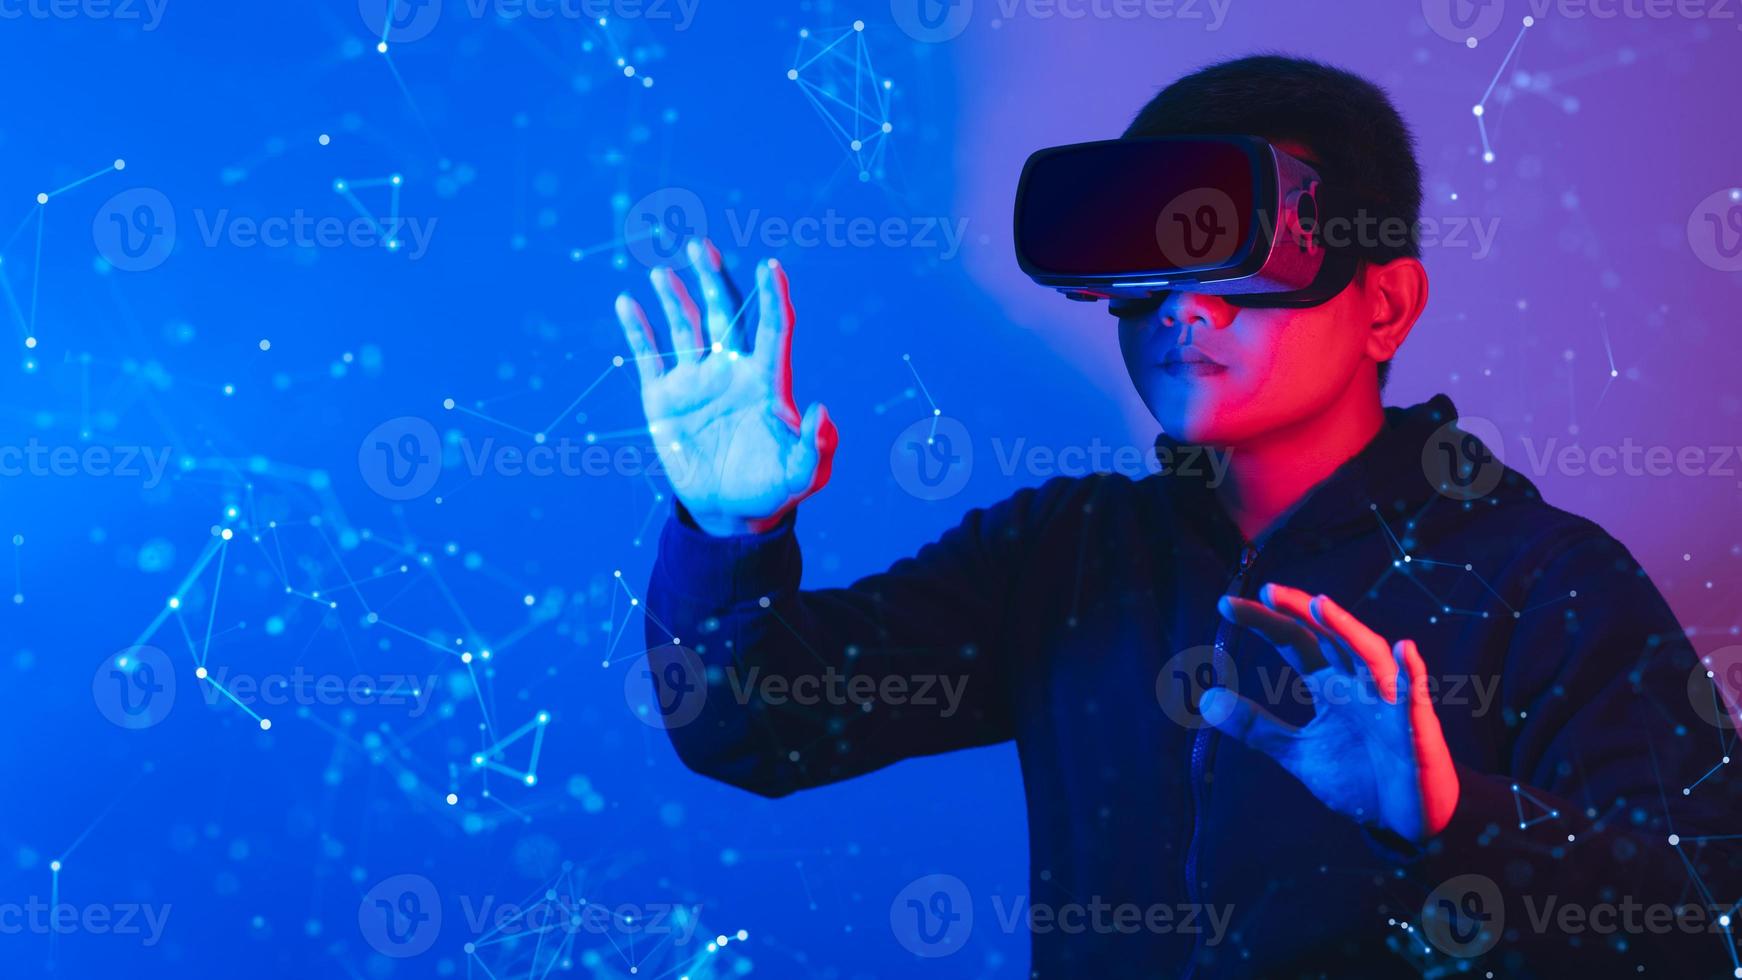 jovem usando óculos de vr. conceito de realidade virtual de tecnologia metaverse. dispositivo de realidade virtual, simulação, 3d, ar, vr, inovação e tecnologia do futuro nas mídias sociais. foto